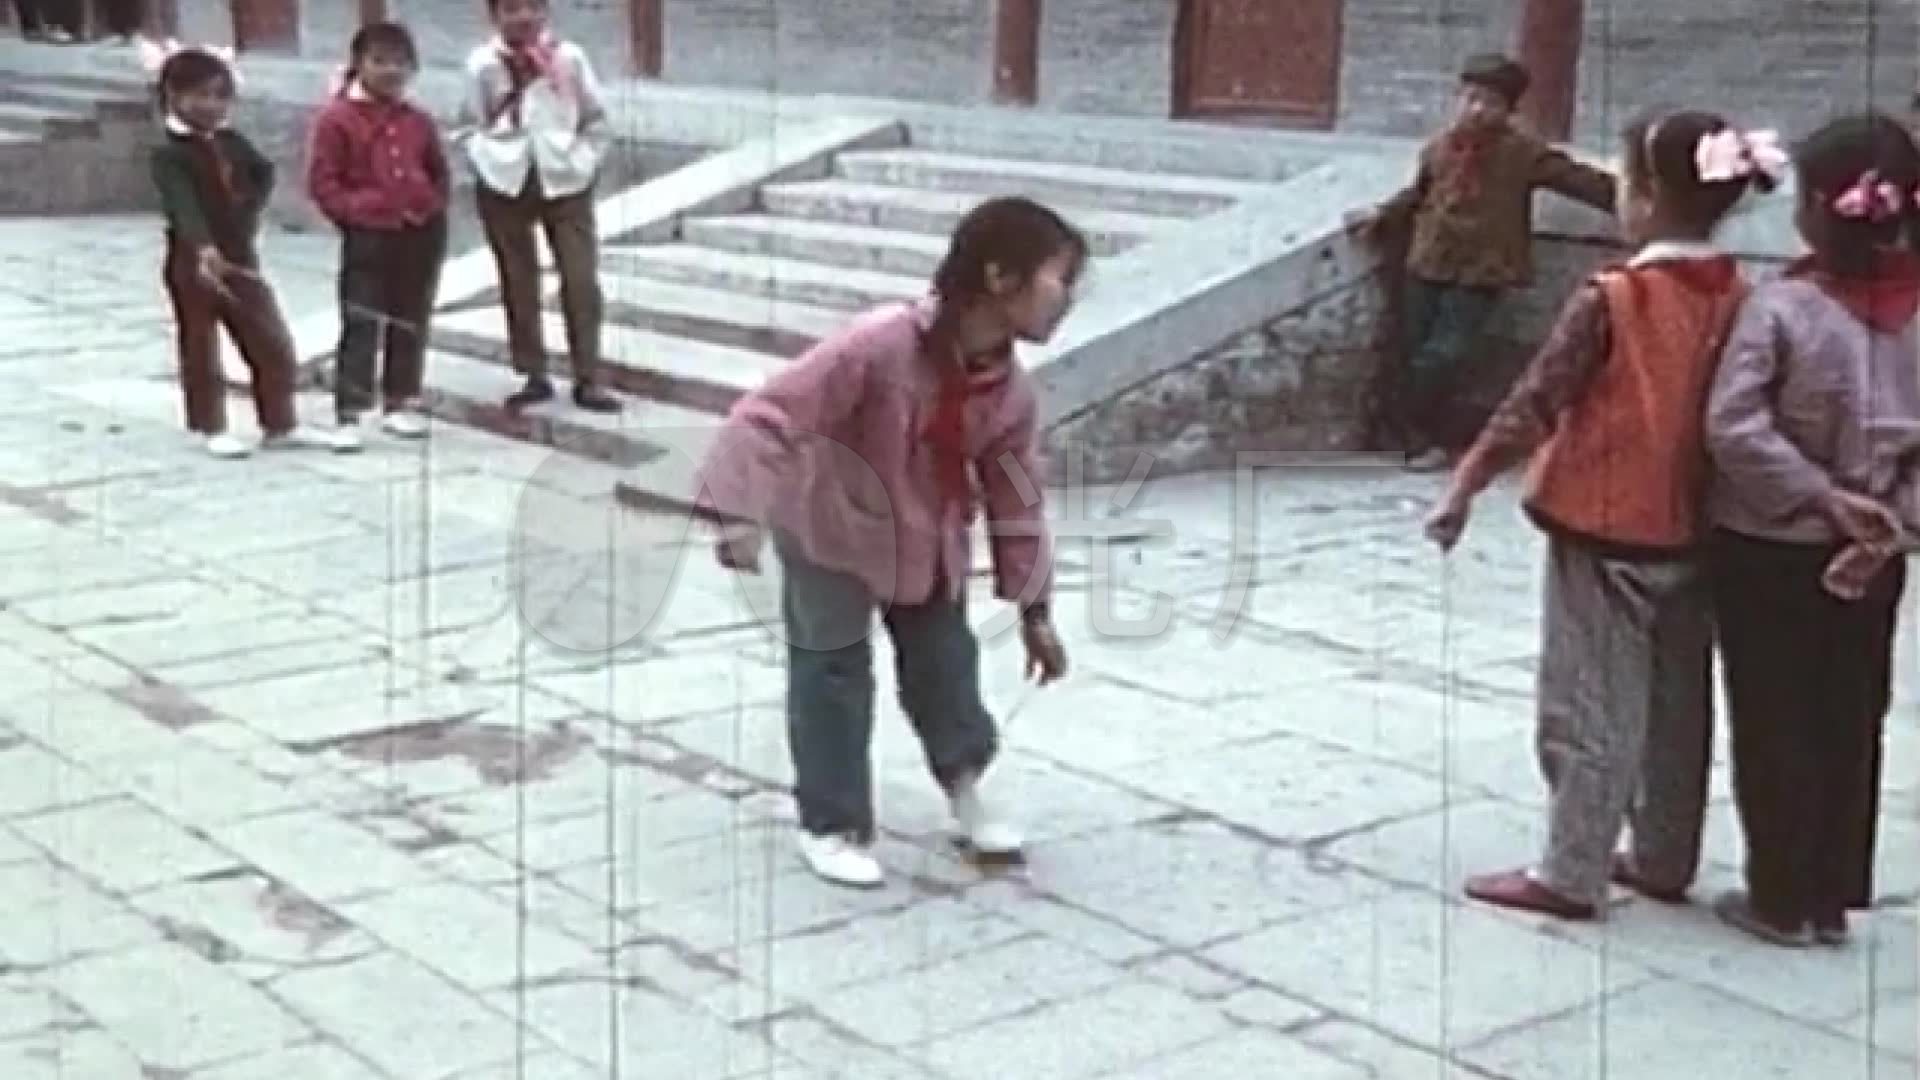 中国老照片 80年代老照片 历史图库_历史照片 - 童年365